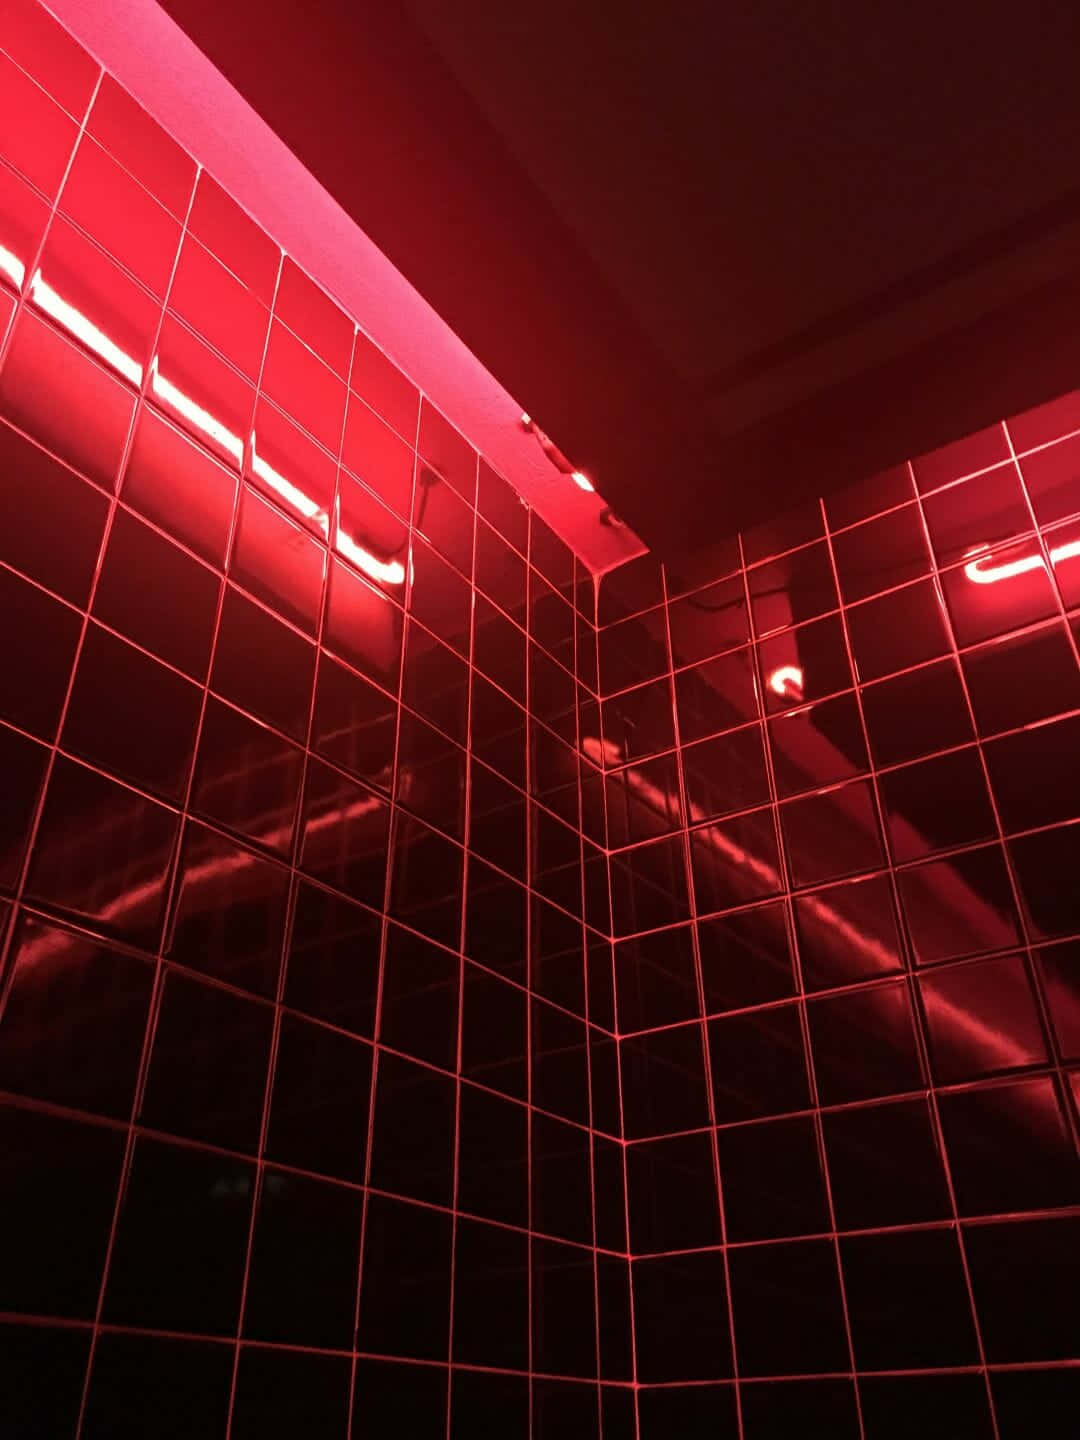 Et badeværelse med røde lys i væggen. Wallpaper